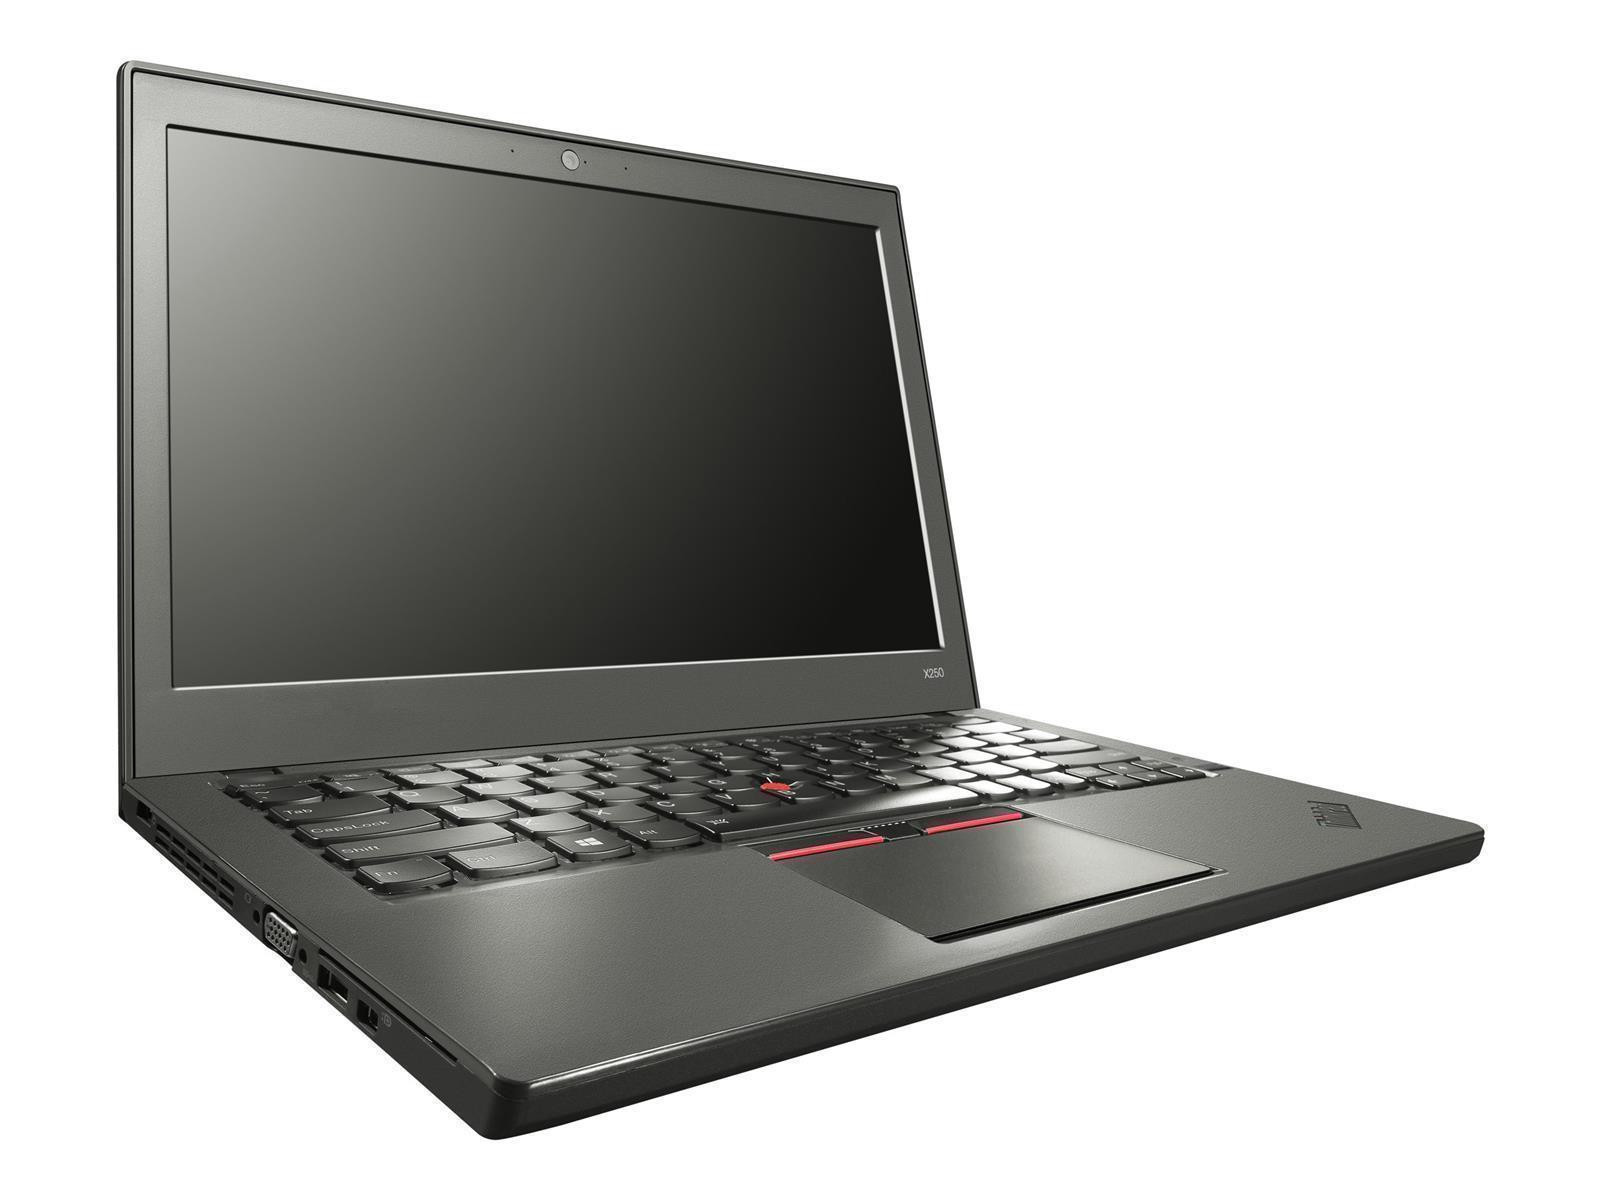 Lenovo ThinkPad X250 Laptop Intel Core i5-5300U 4GB RAM 256GB SSD HD Win 10 Pro DE